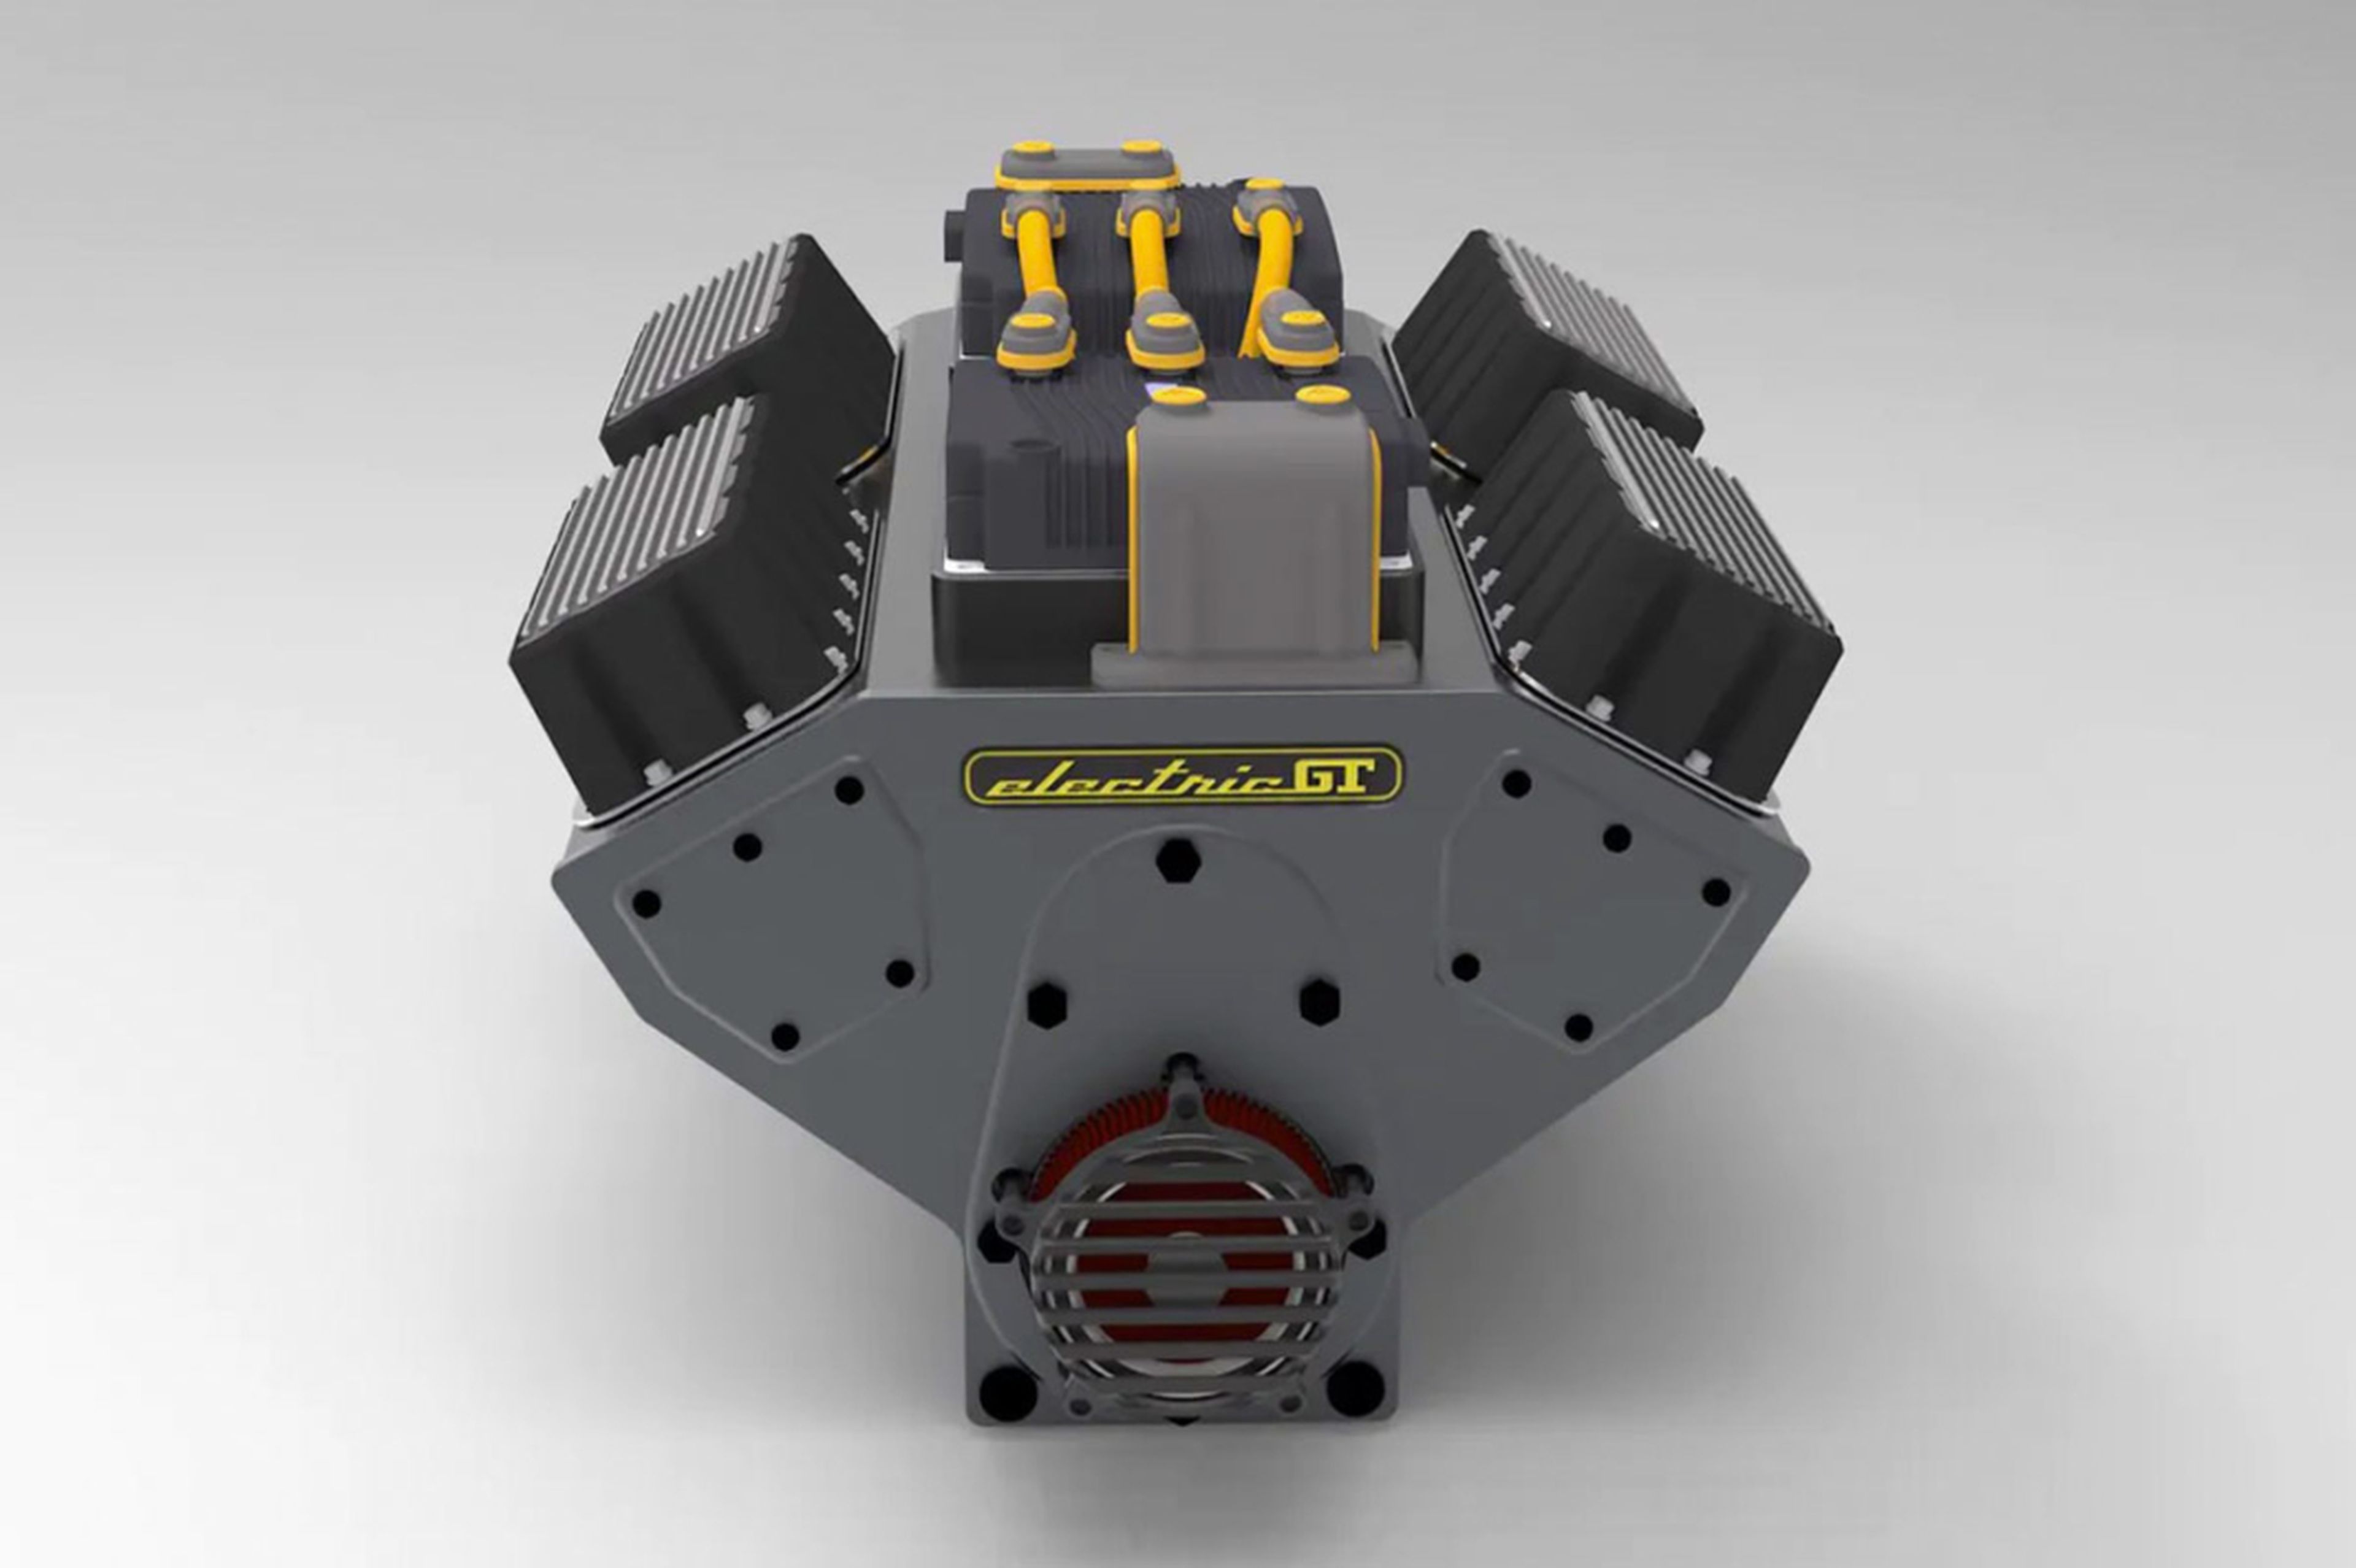 Electric GT crea el primer motor V8 eléctrico instalable en cualquier coche